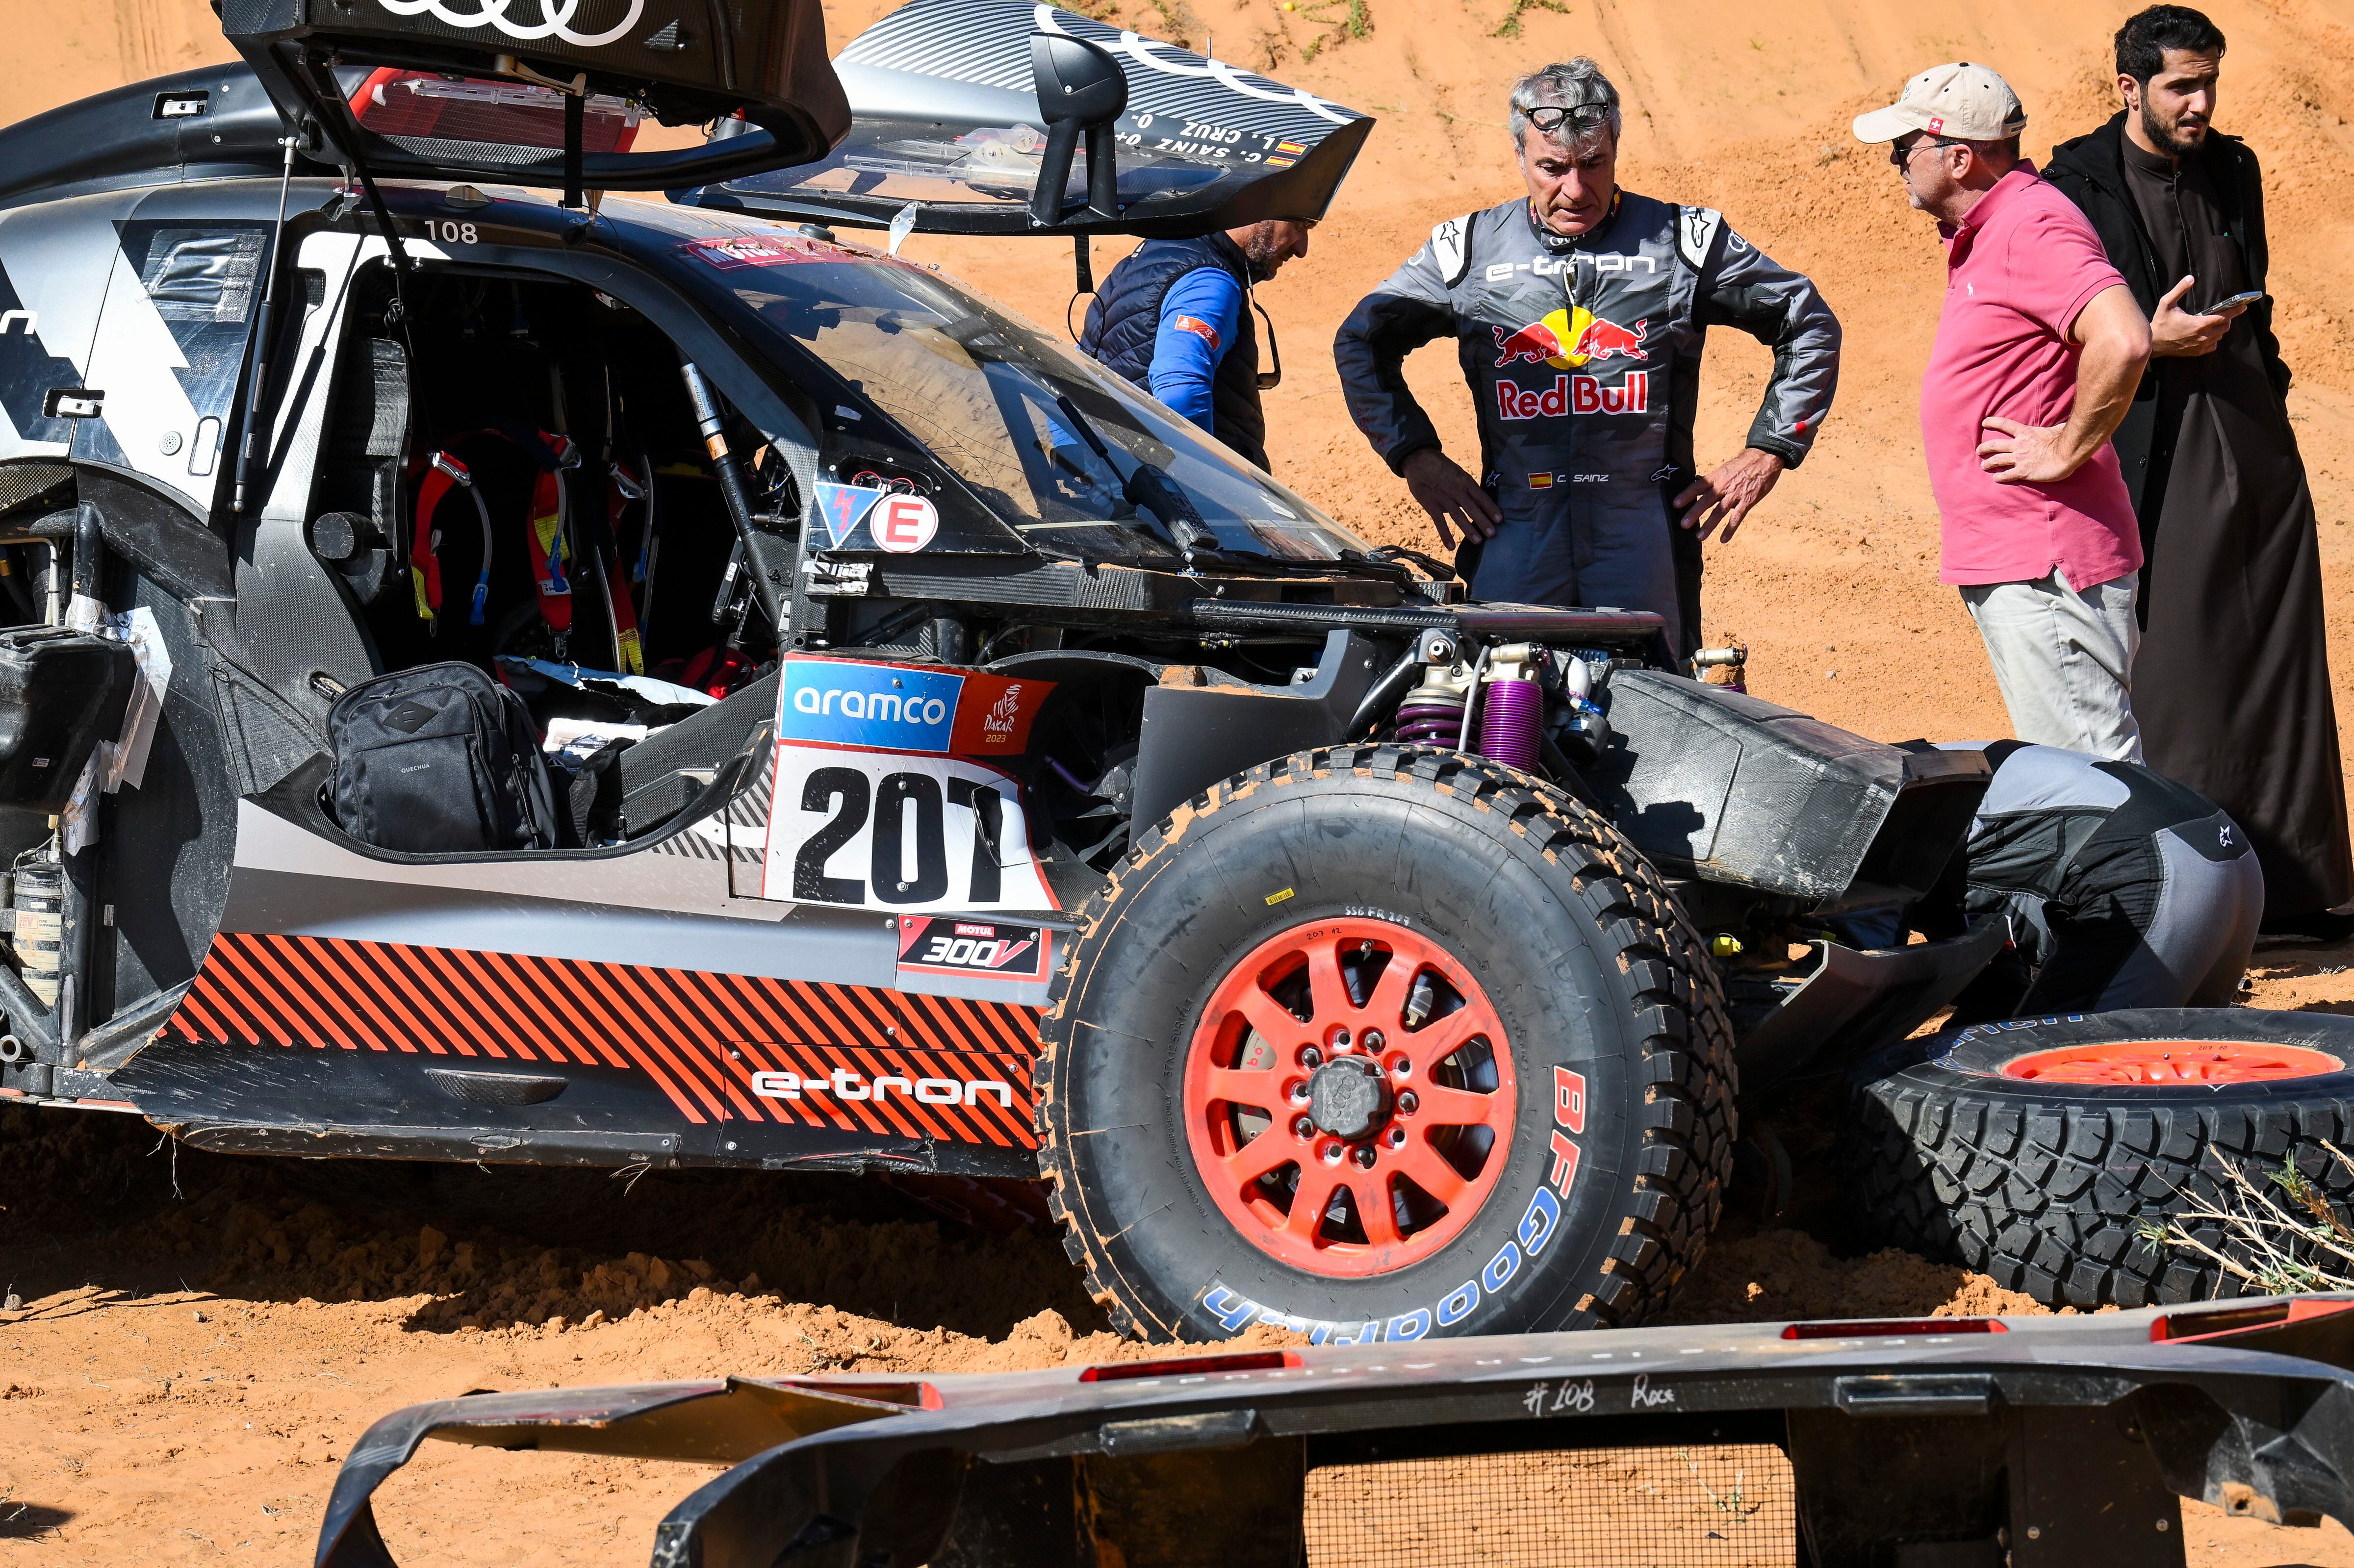 El piloto Carlos Sainz y su compañero Lucas Cruz, tras su accidente durante la etapa 6 del Dakar.